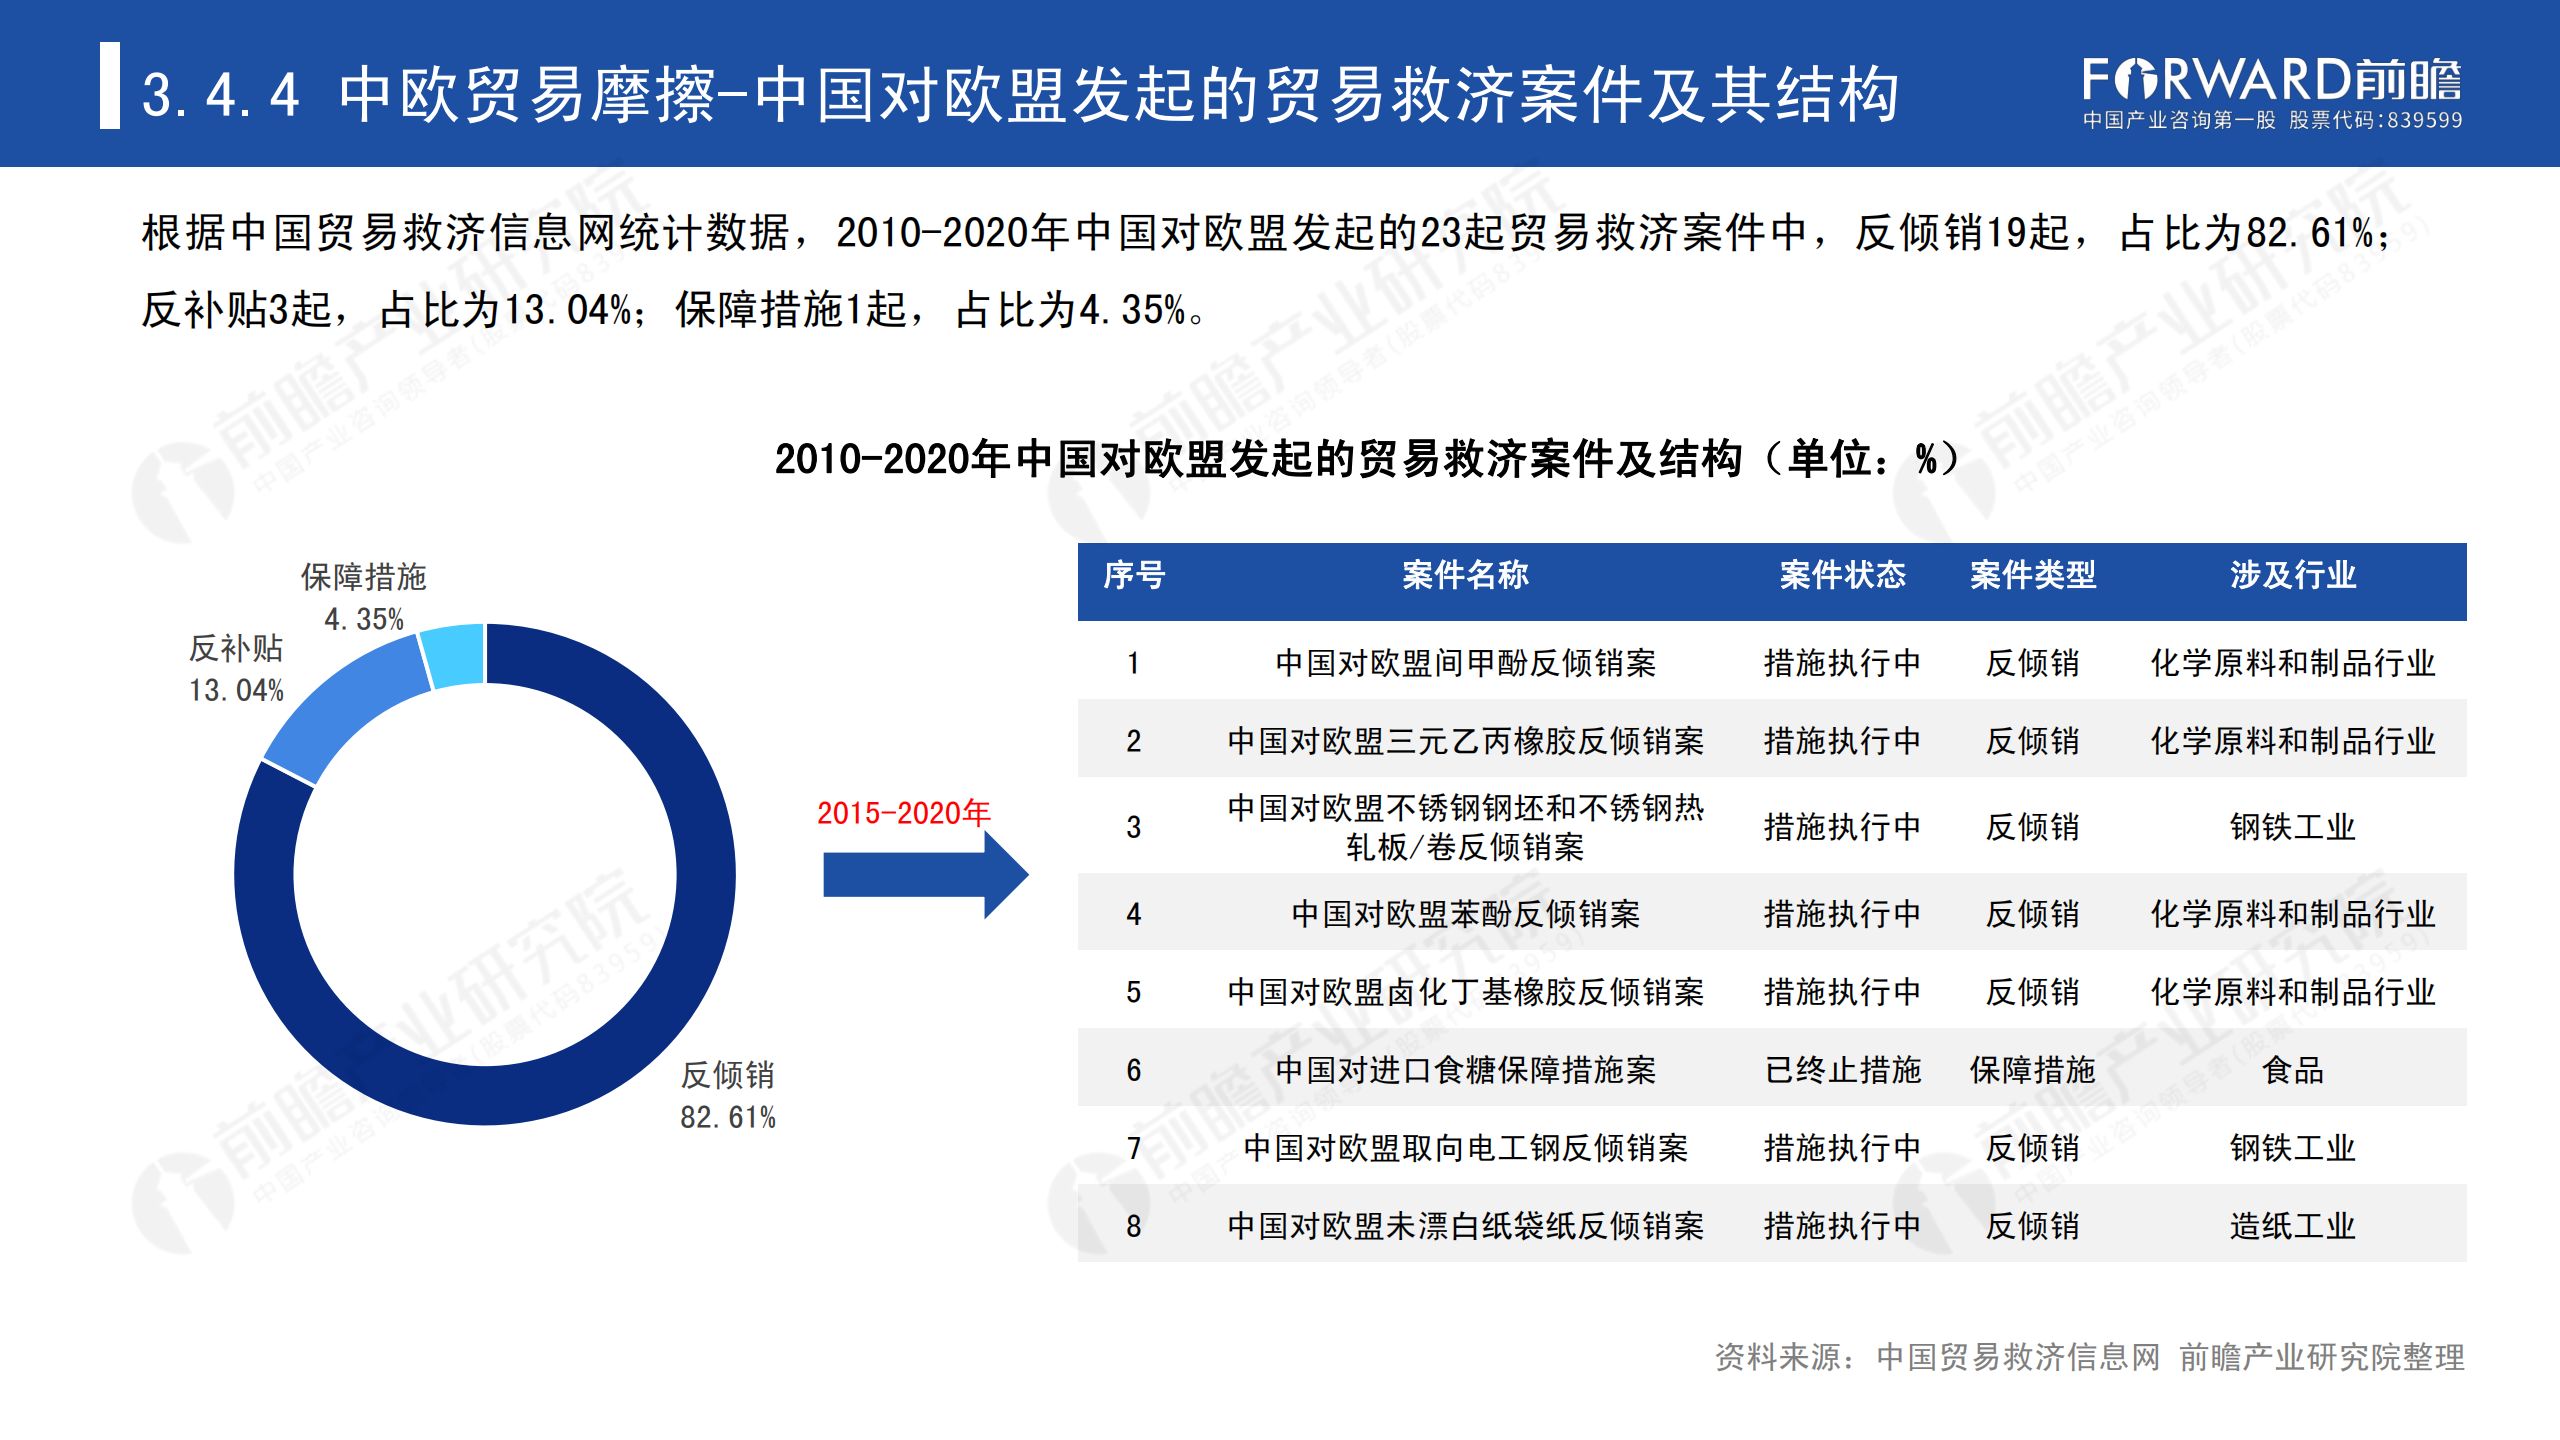 2020年中国贸易摩擦全景回顾-前瞻-2021-64页_53.png